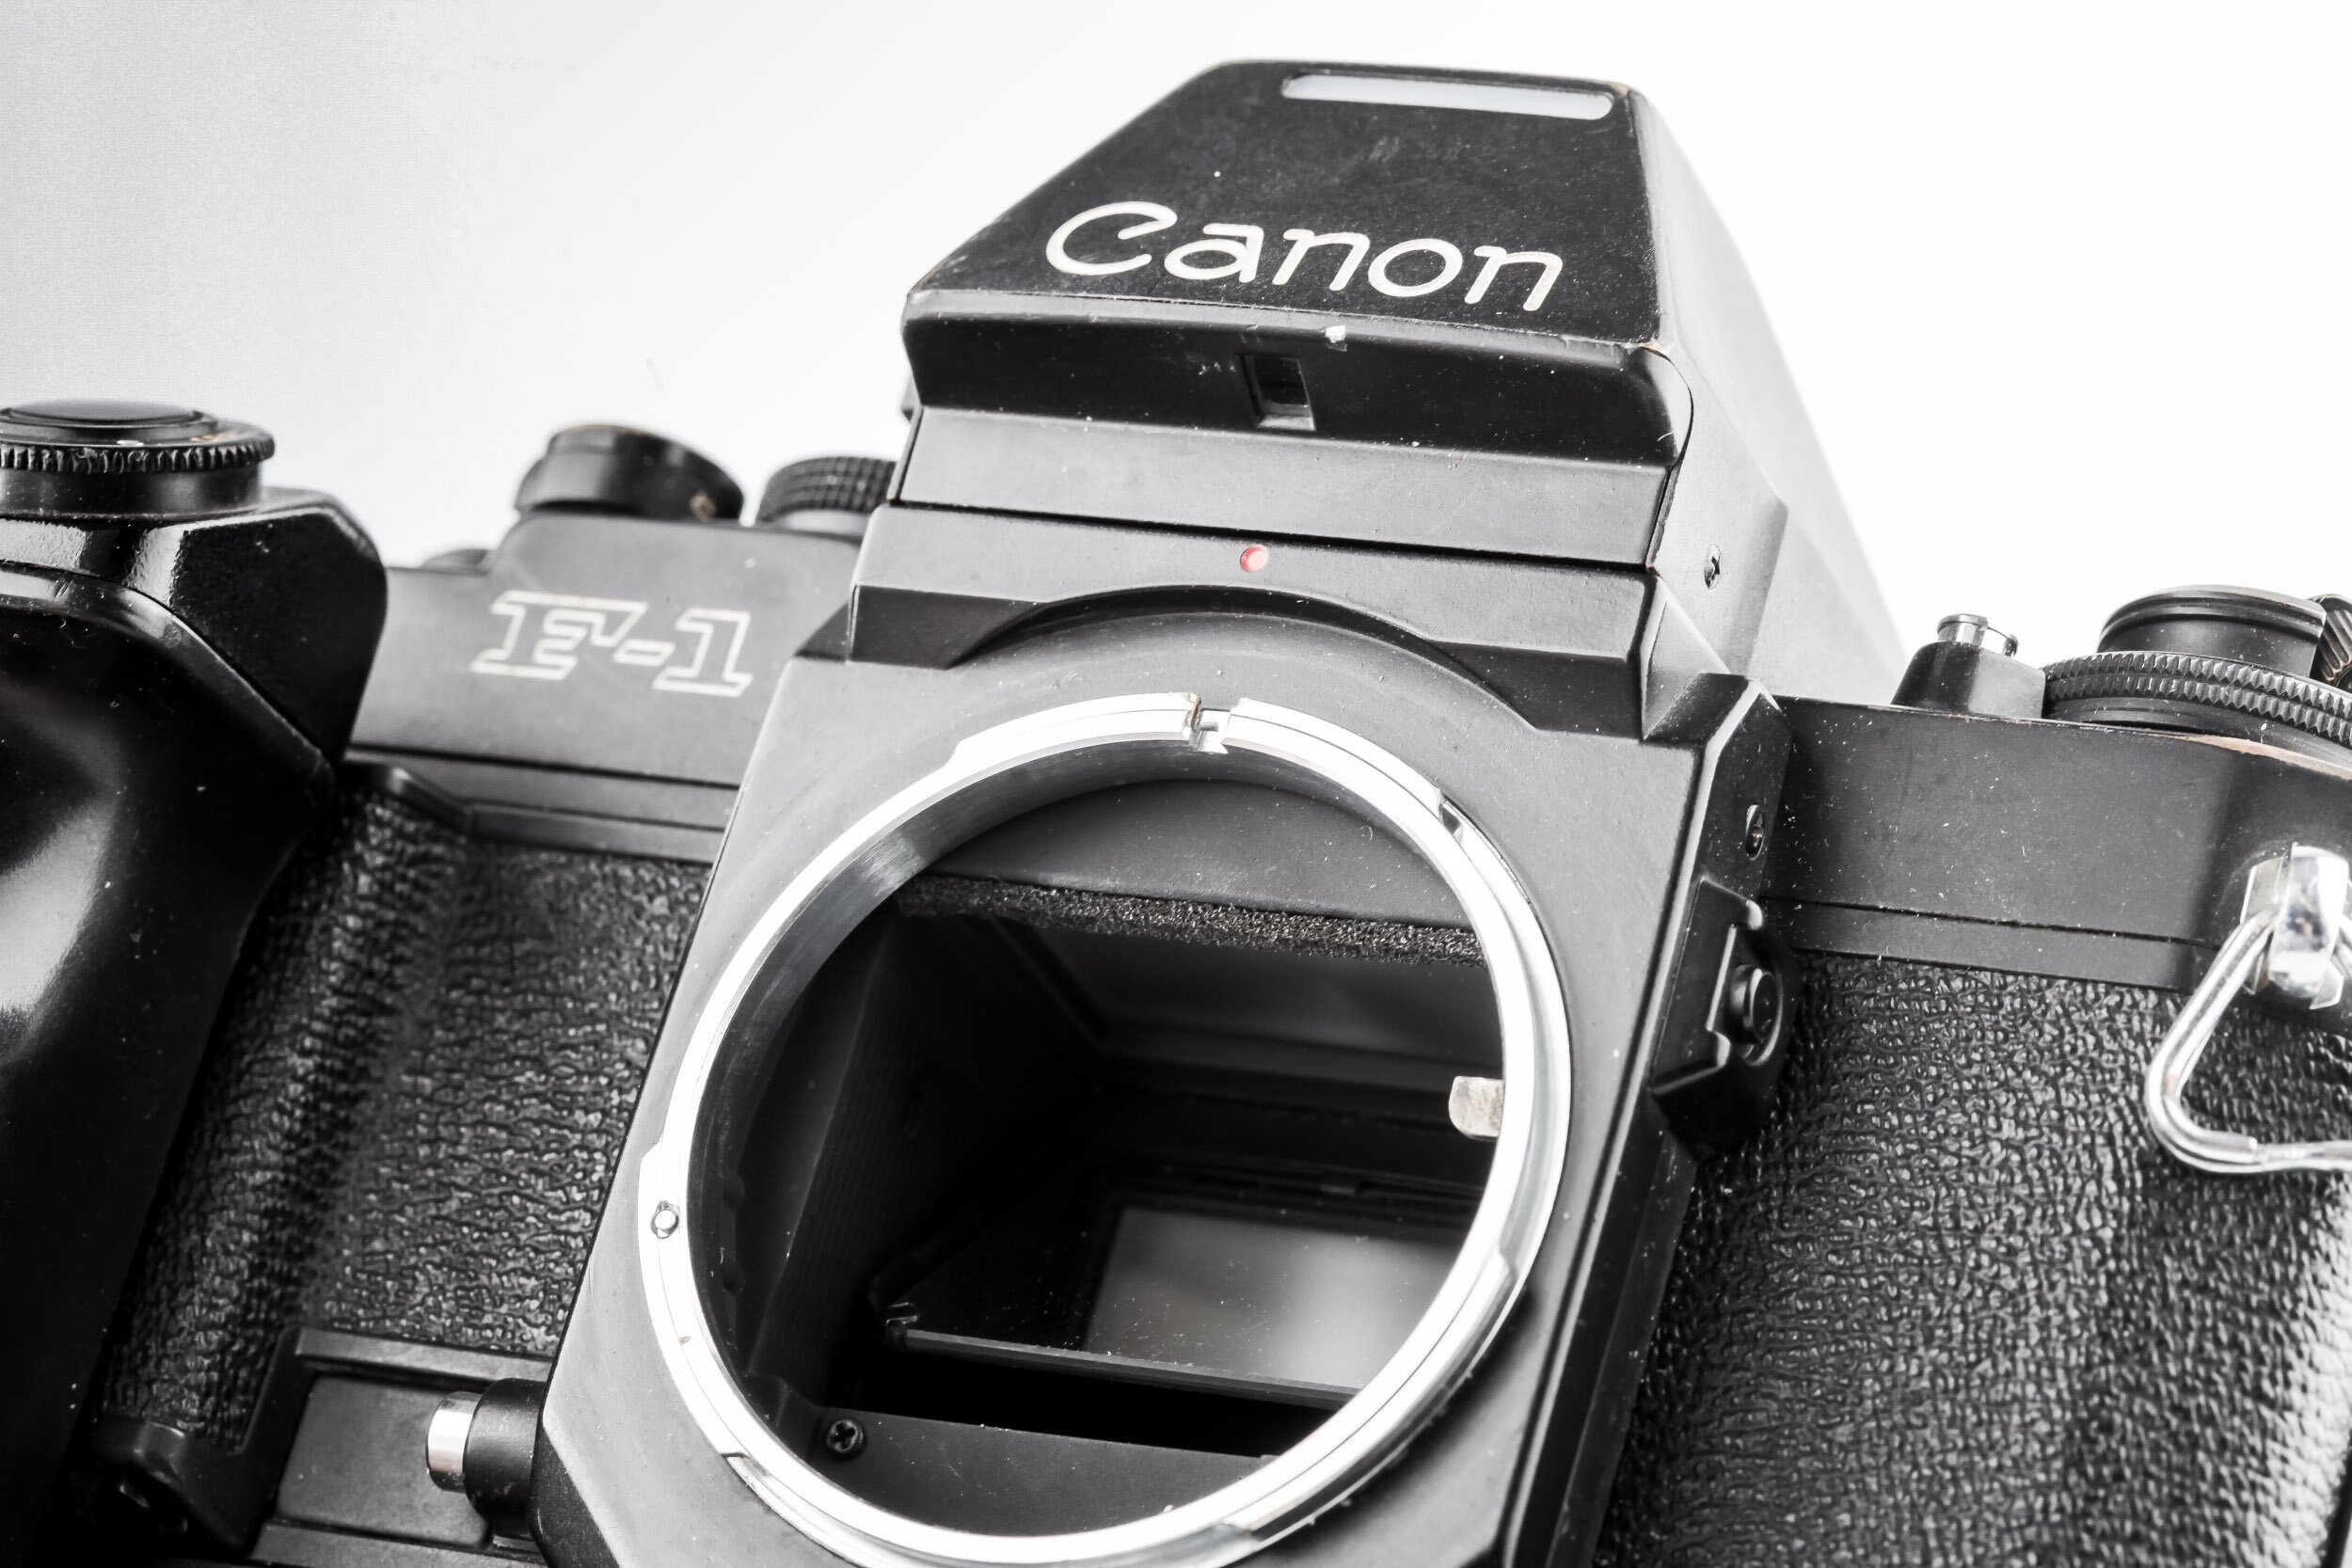 Canon F-1 - Canon AE Motor Drive FN